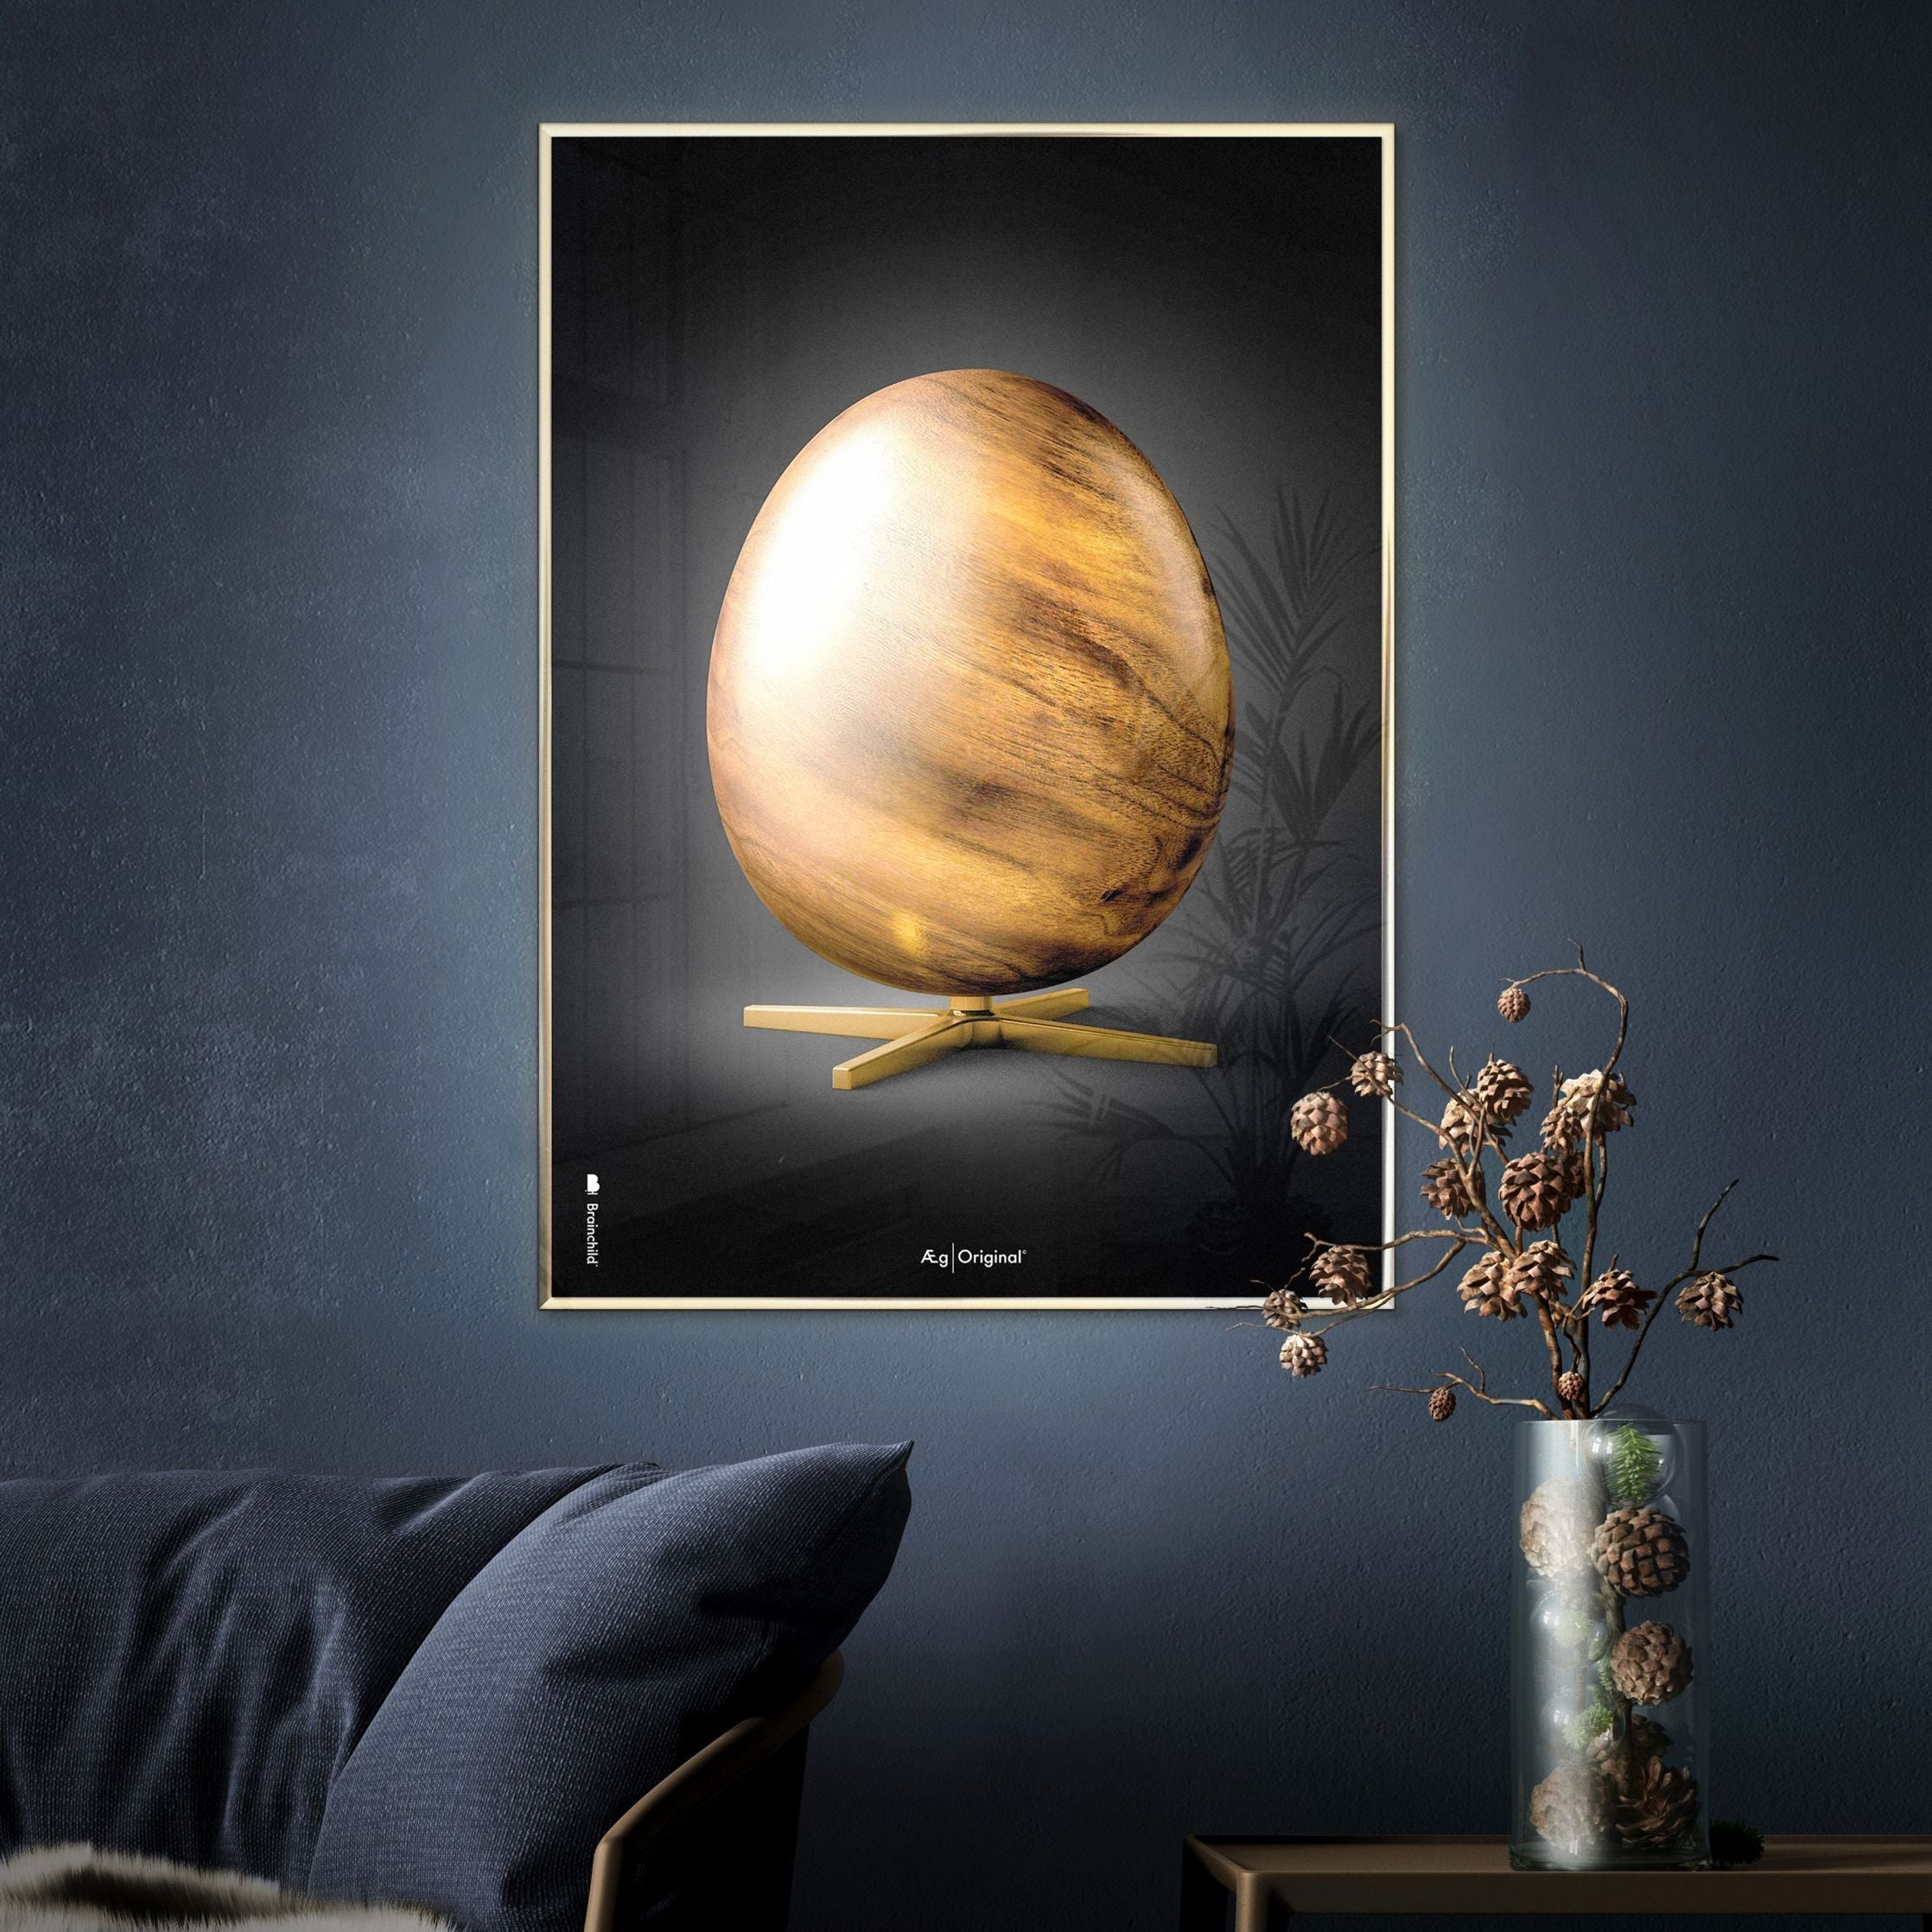 Brainchild Egg Figures Poster, Frame Made Of Dark Wood 50x70 Cm, Black